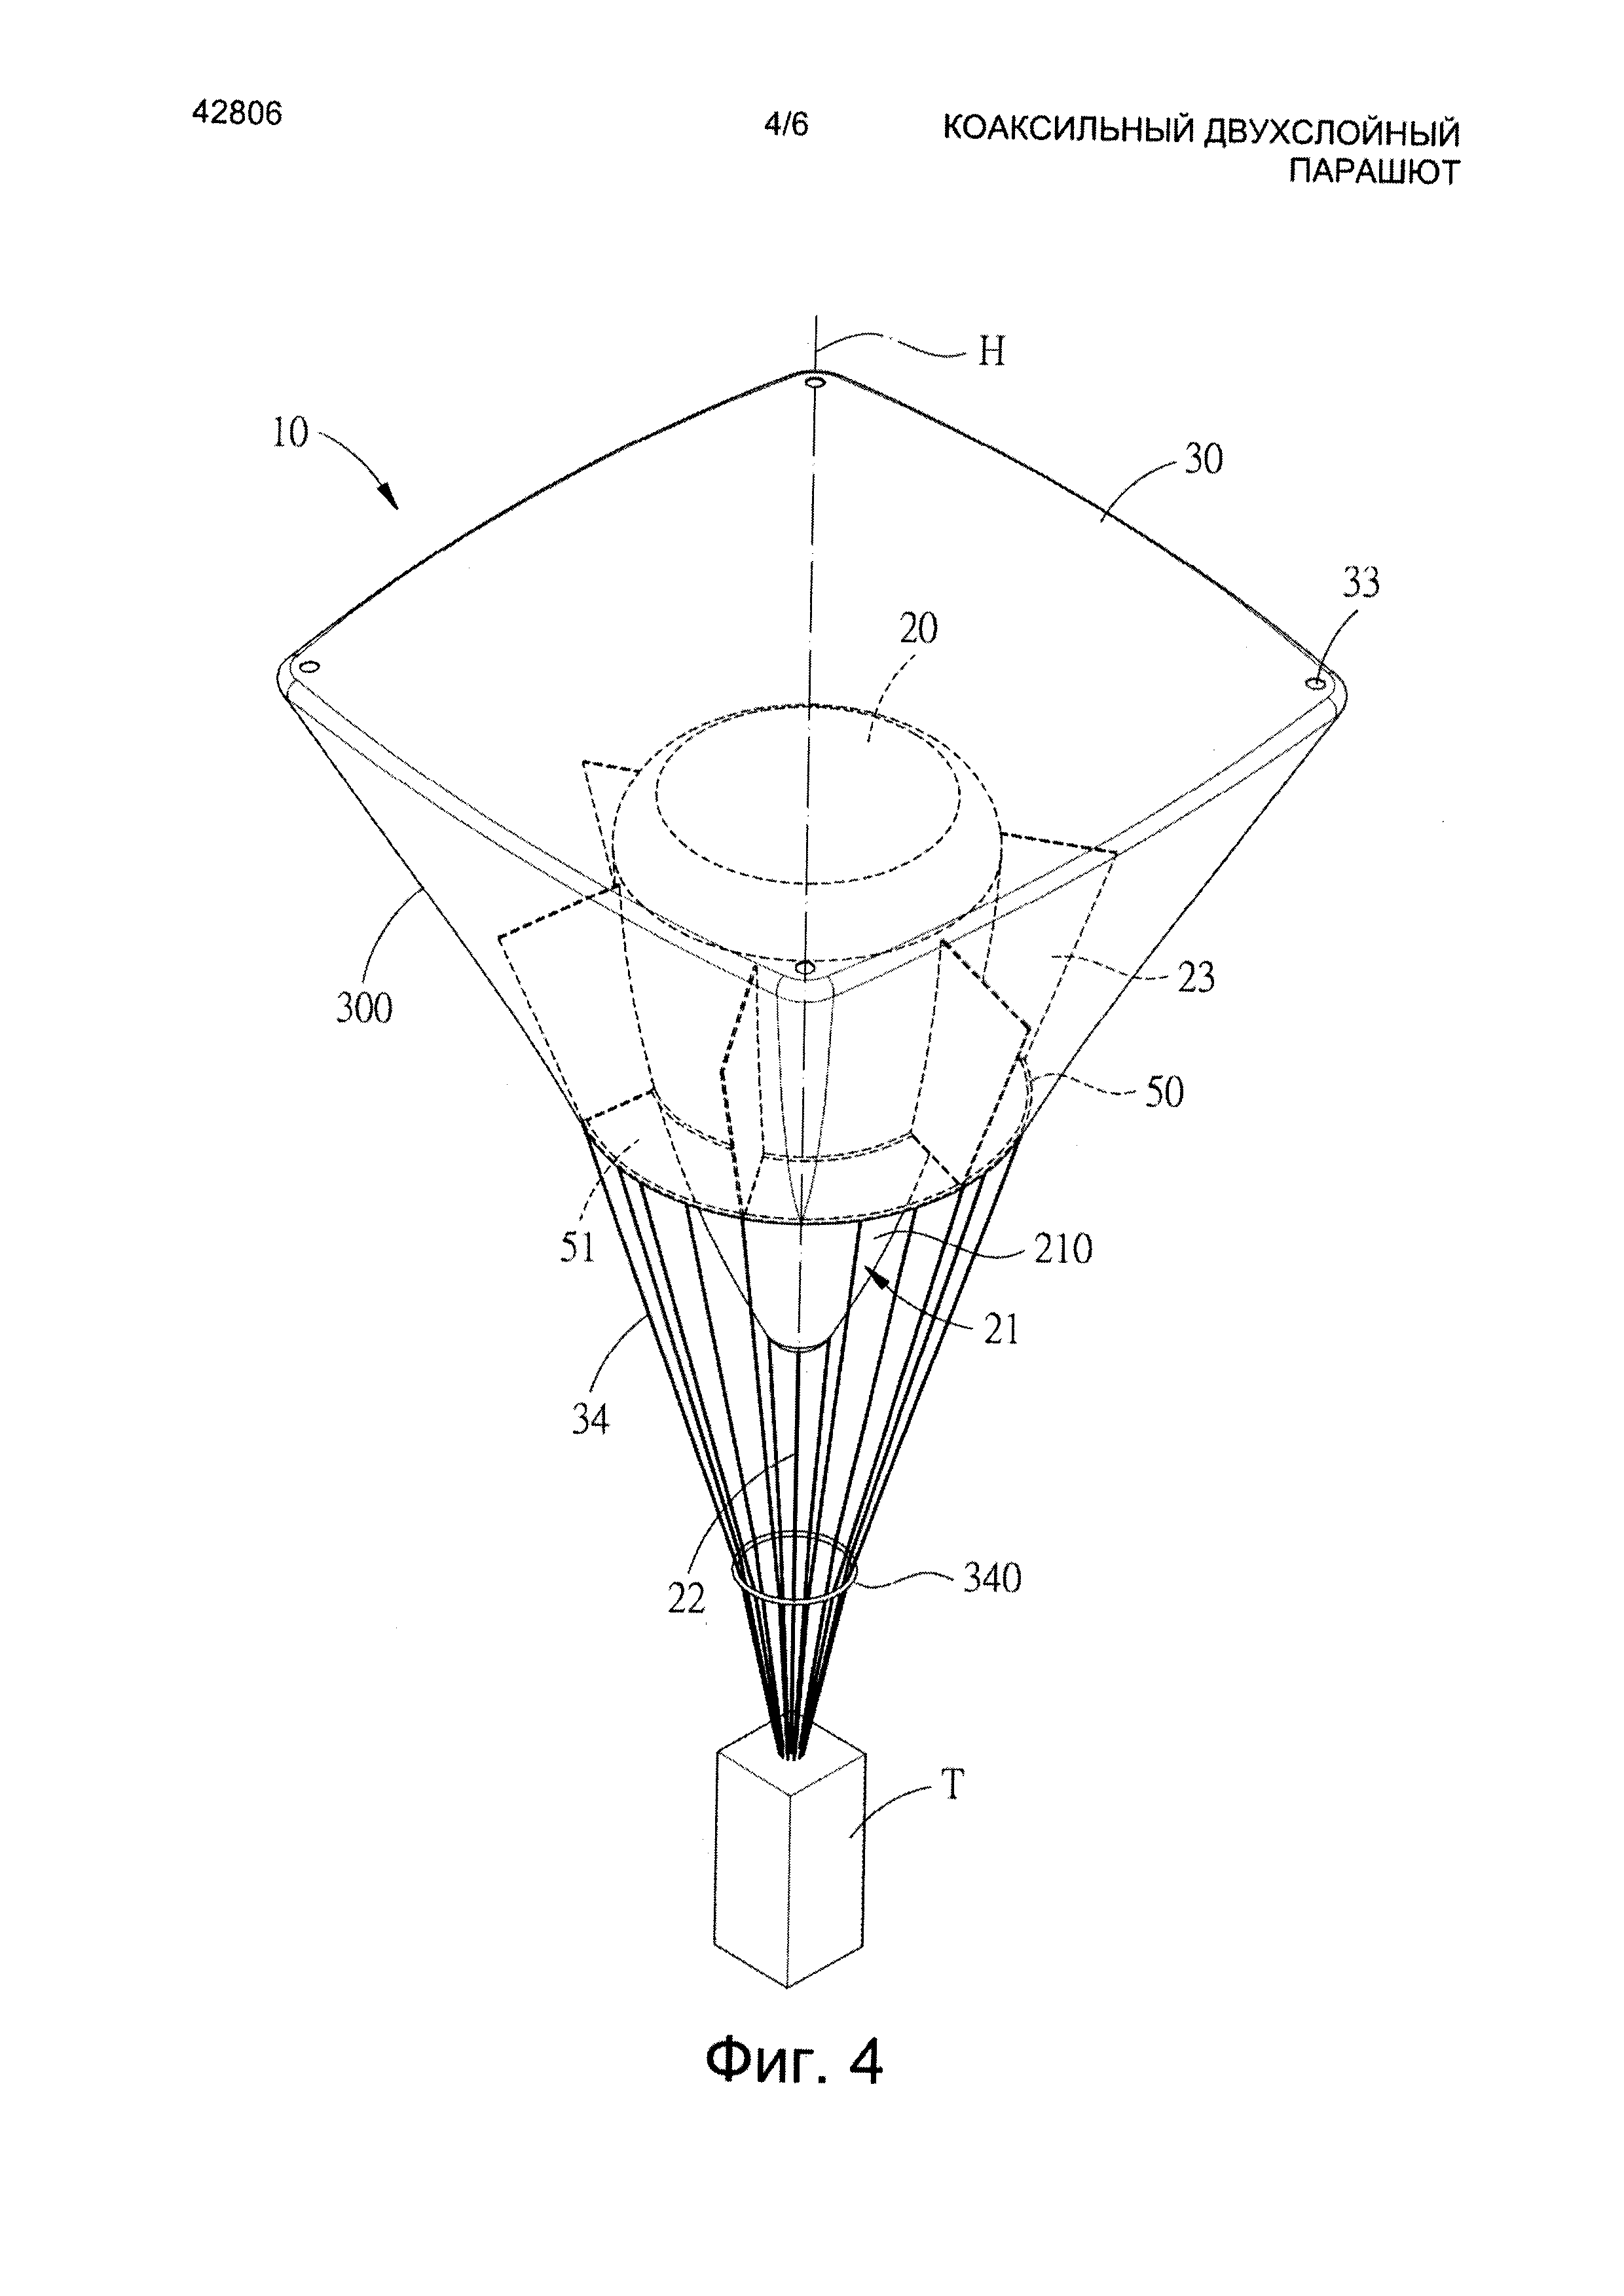 Коаксиальный двухслойный парашют